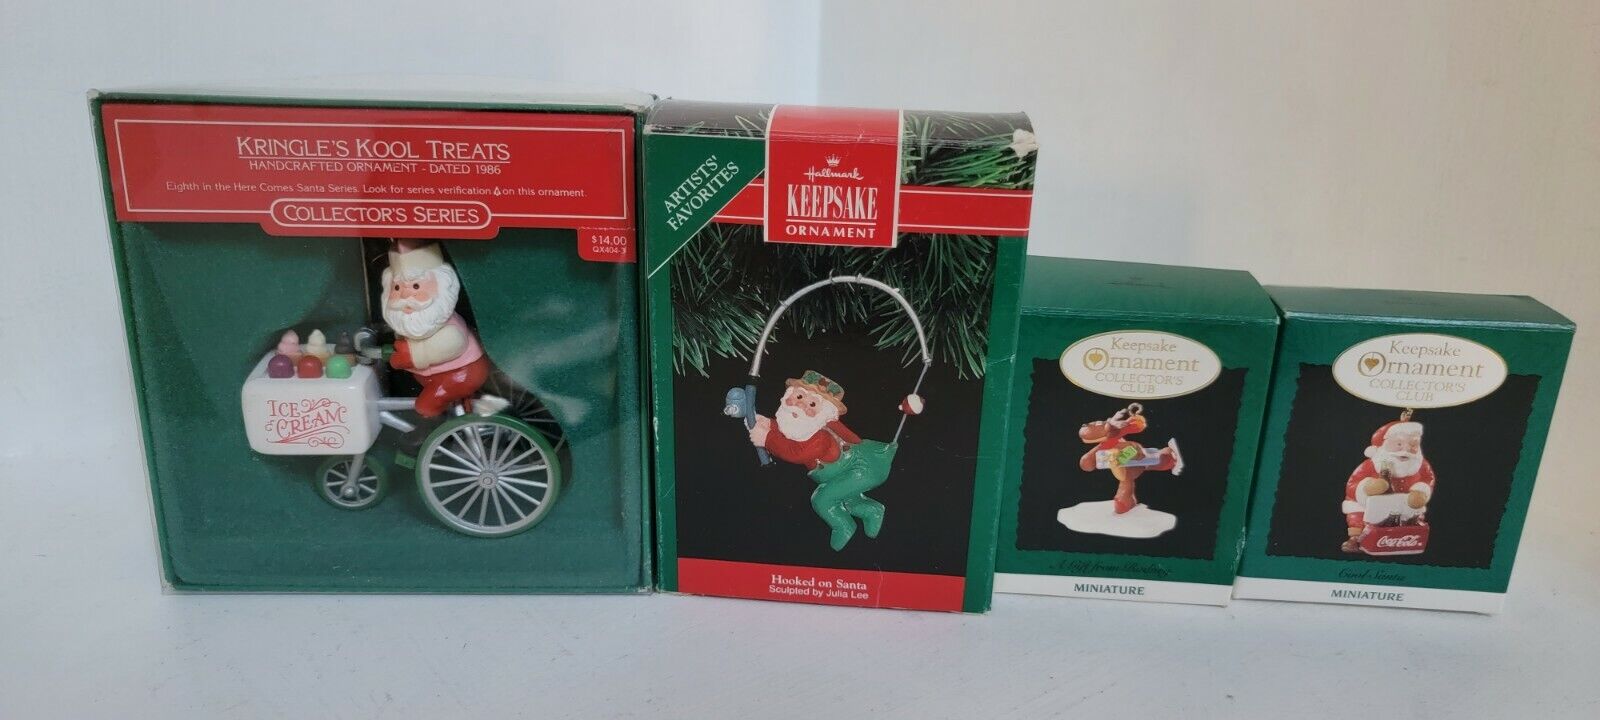 Lot of 4 Vintage Hallmark Ornaments - kringle Kool treats ,hooked on santa cool